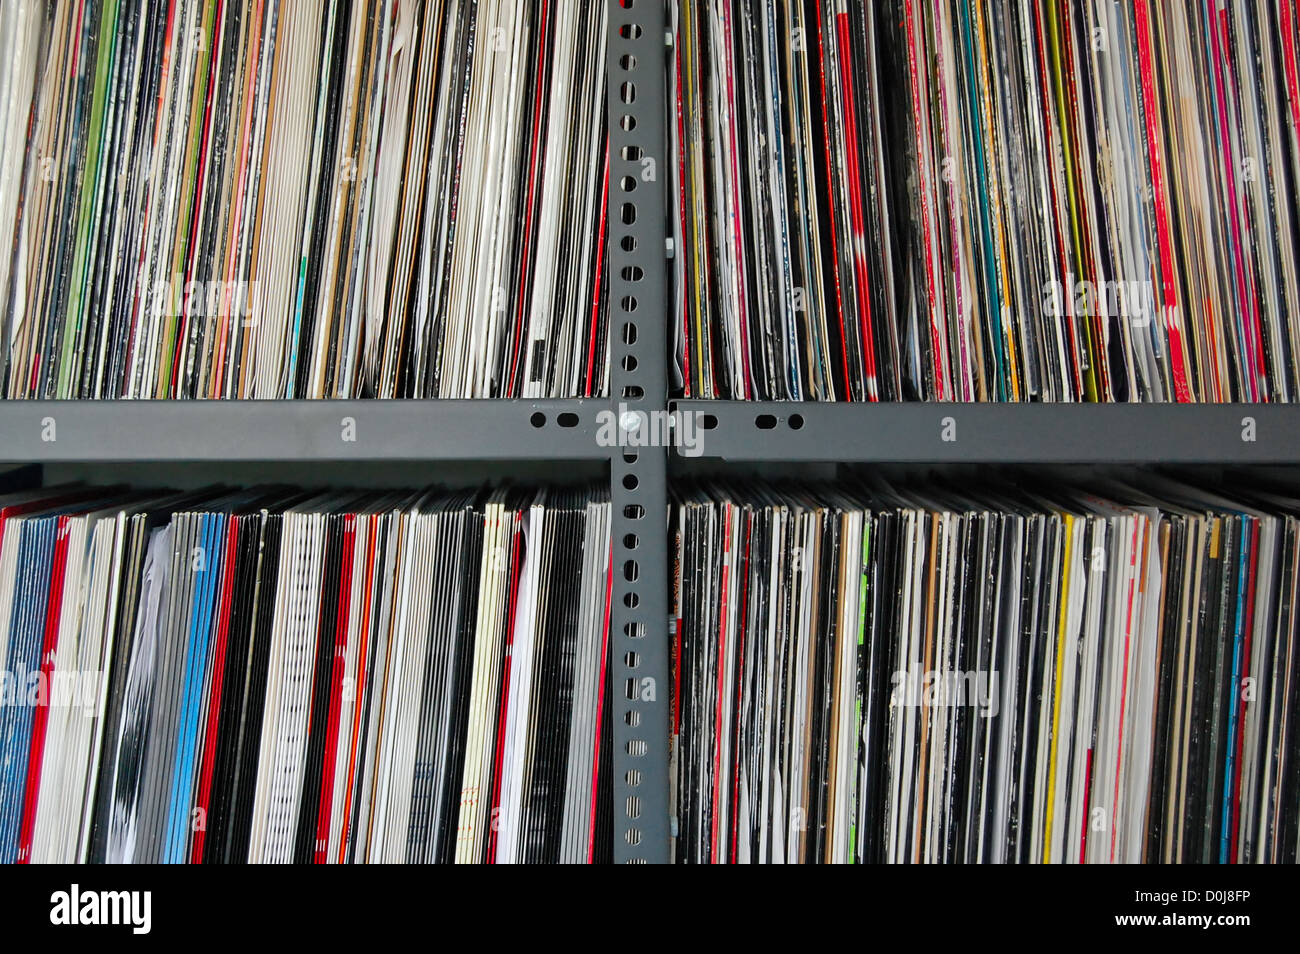 Vinyl-Schallplatten auf Metall Regale gespeichert. Stockfoto